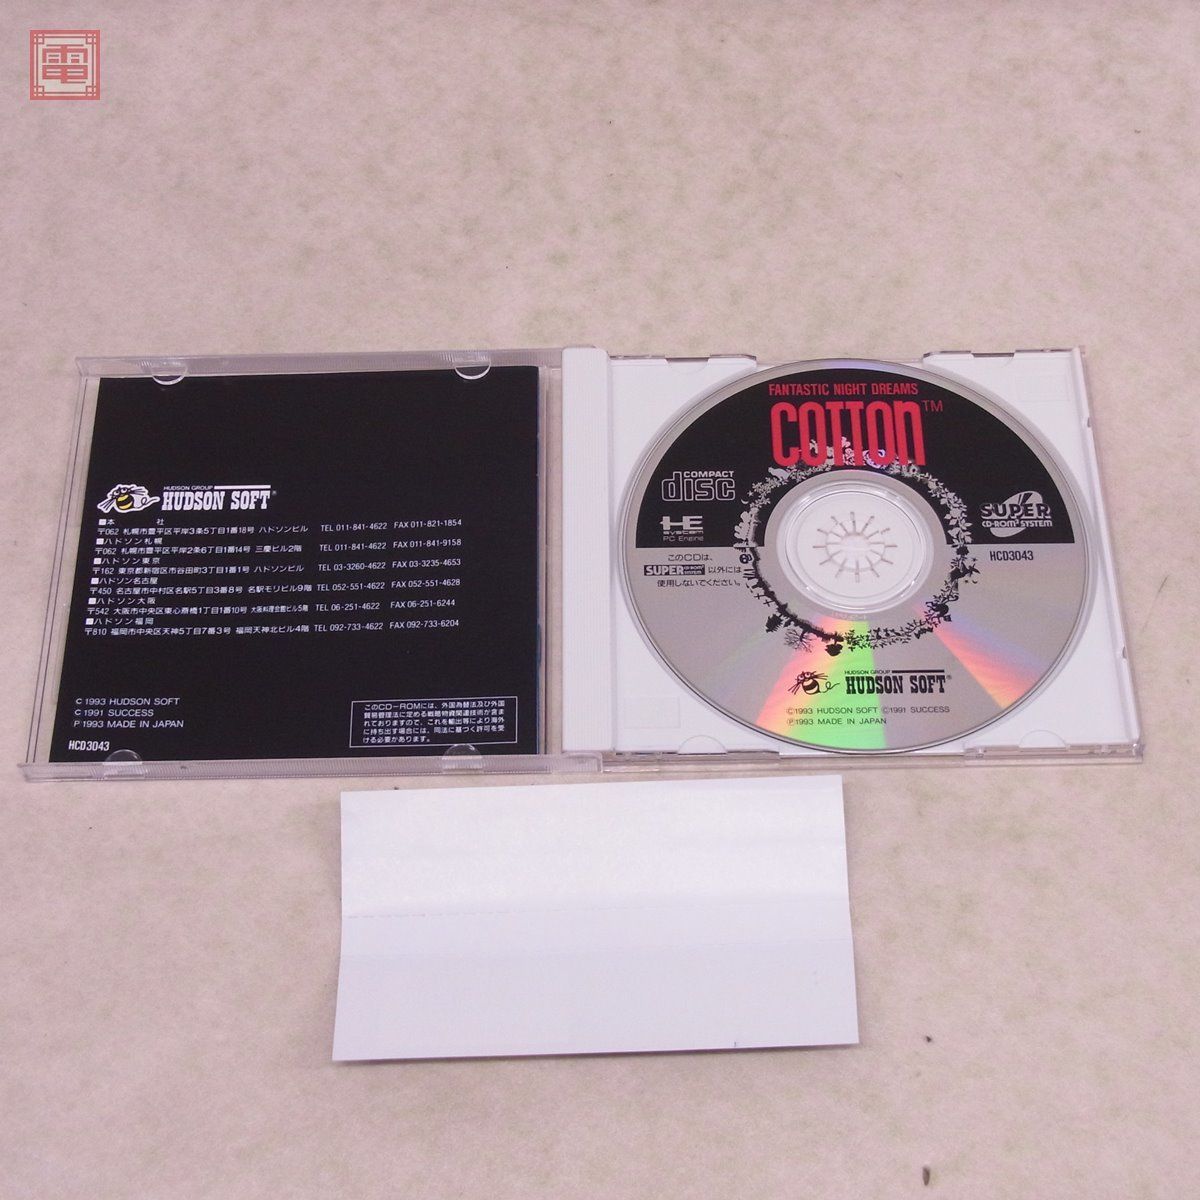 PCE PCエンジン SUPER CD-ROM2 コットン FANTASTIC NIGHT DREAMS COTTON ハドソン HUDSON サクセス SUCCESS 箱説帯付【10_画像2